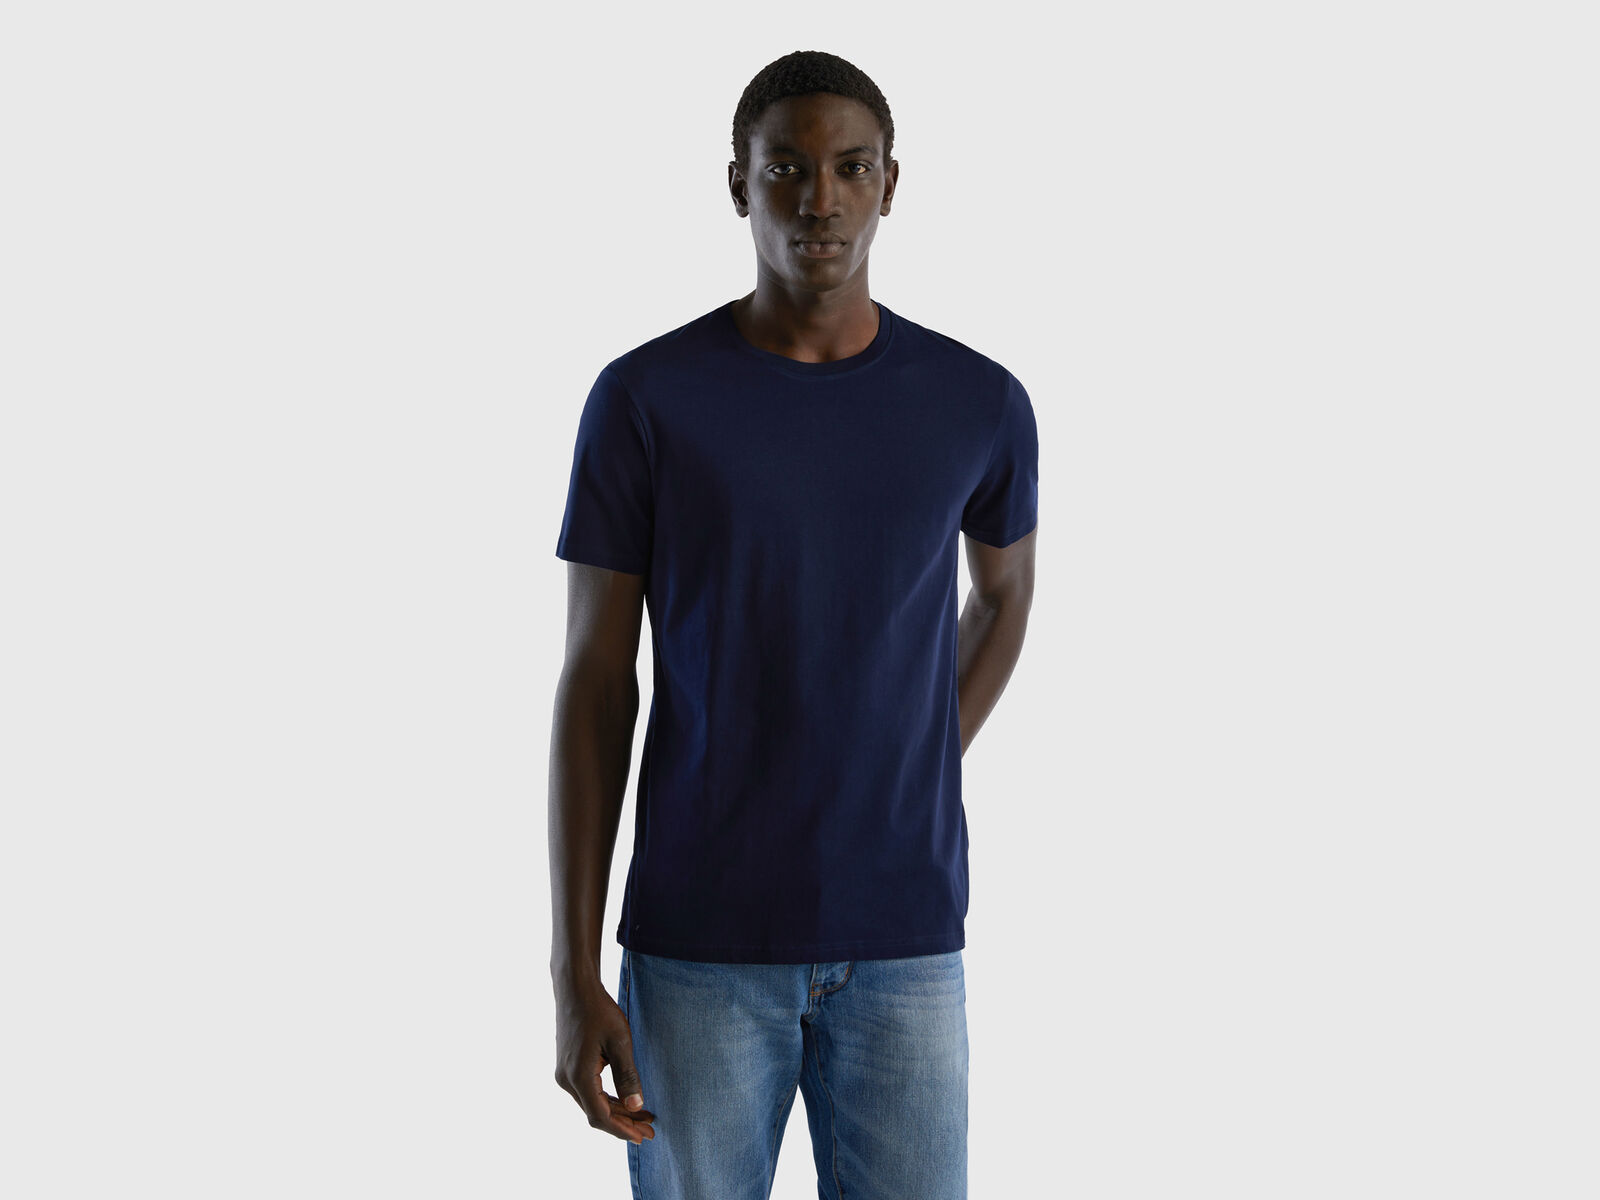 Dark t-shirt - | Benetton Blue blue Dark